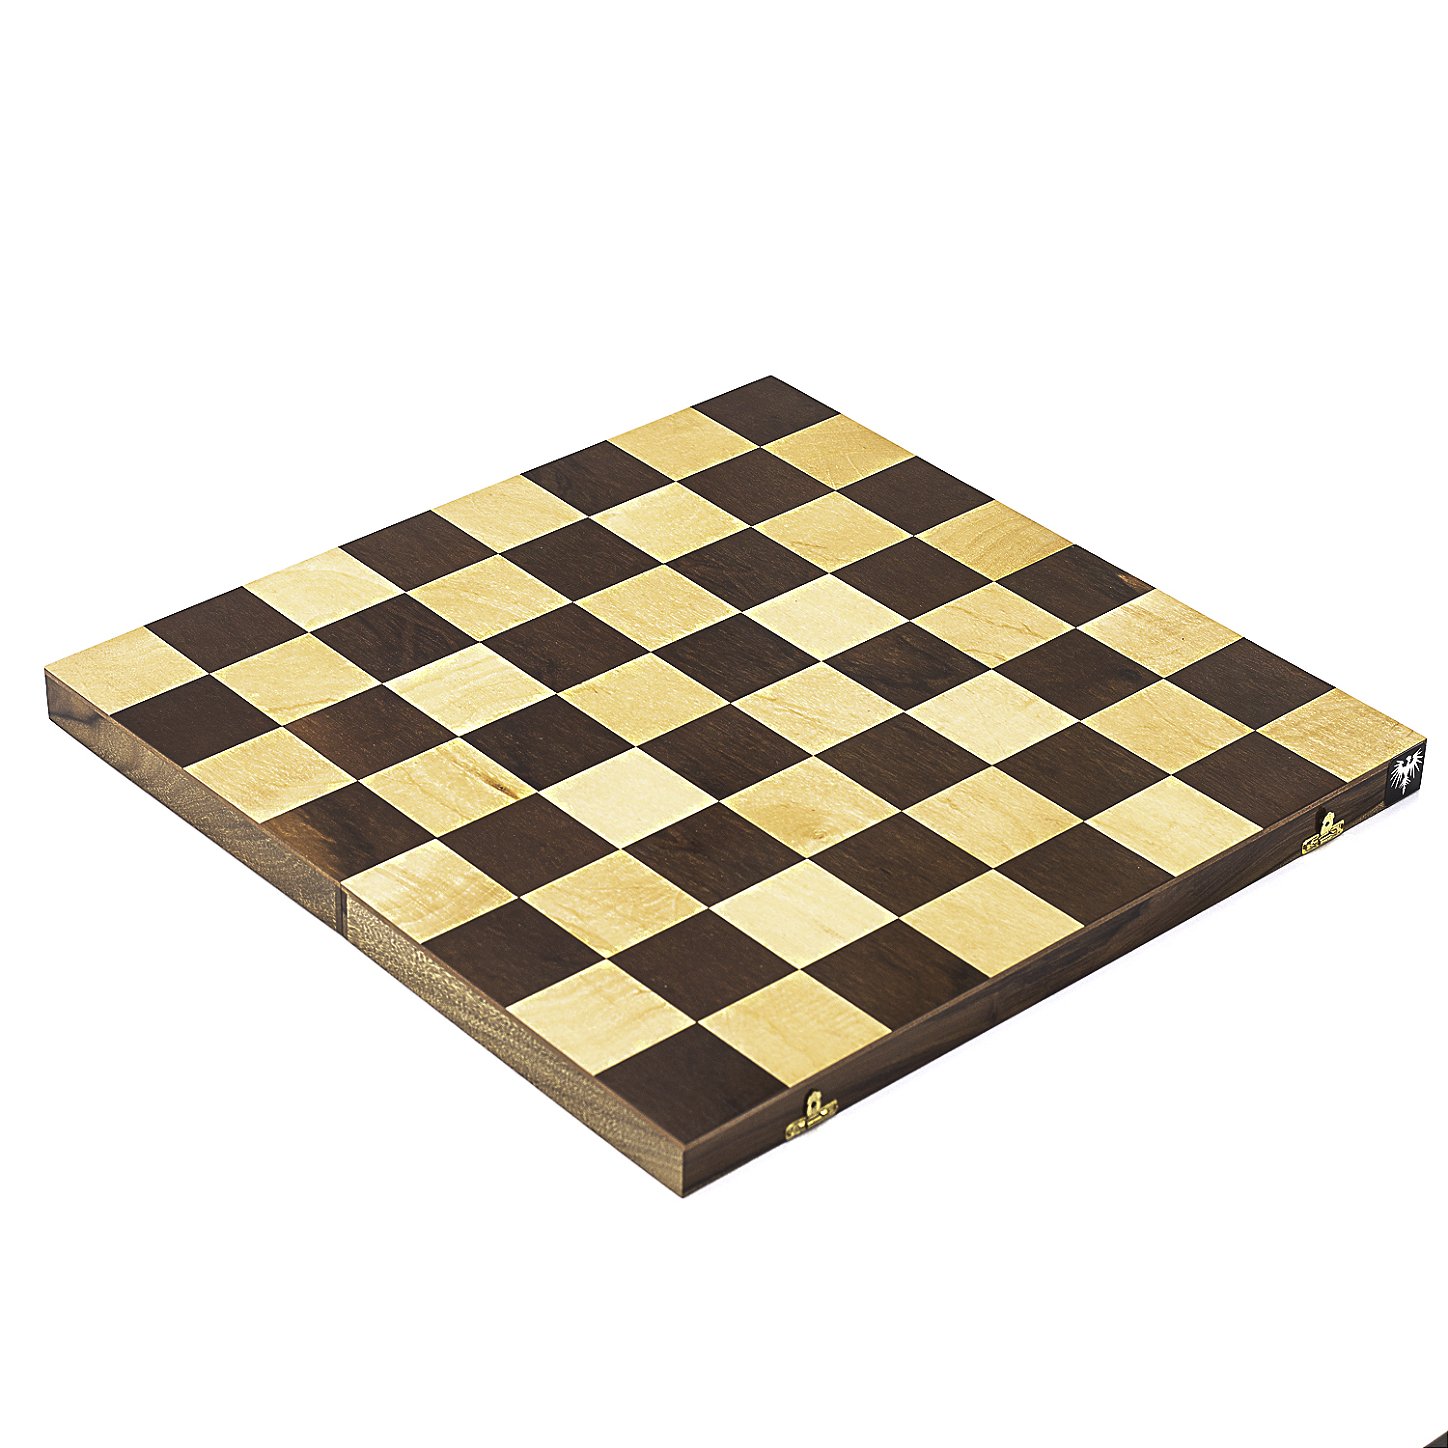 Figura do rei do xadrez dourado no tabuleiro